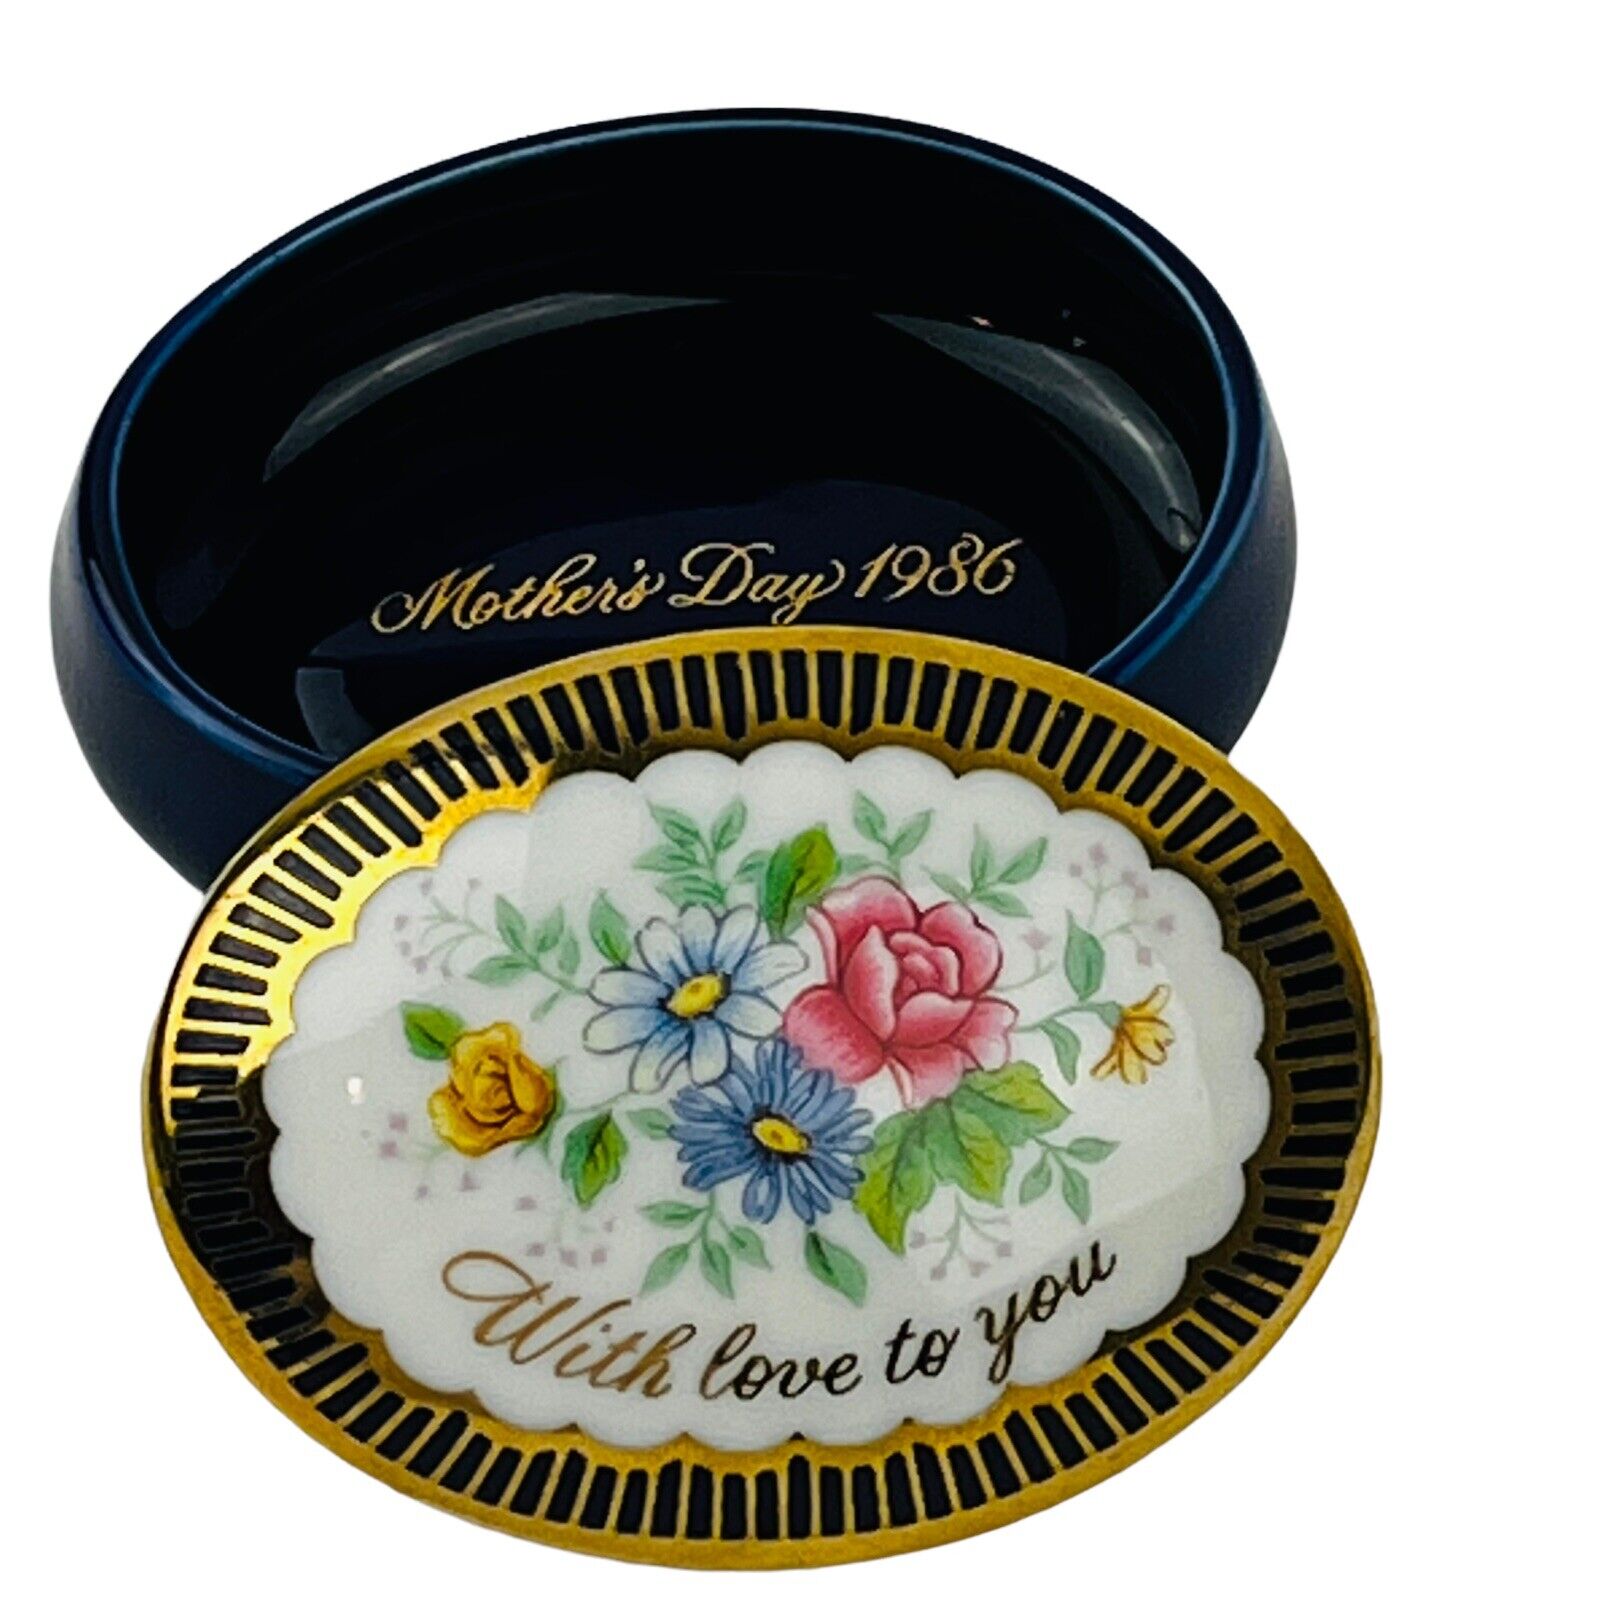 Vintage Avon Trinket Box Mothers Day 1986 Cobalt Blue Porcelain Gold Trim Floral